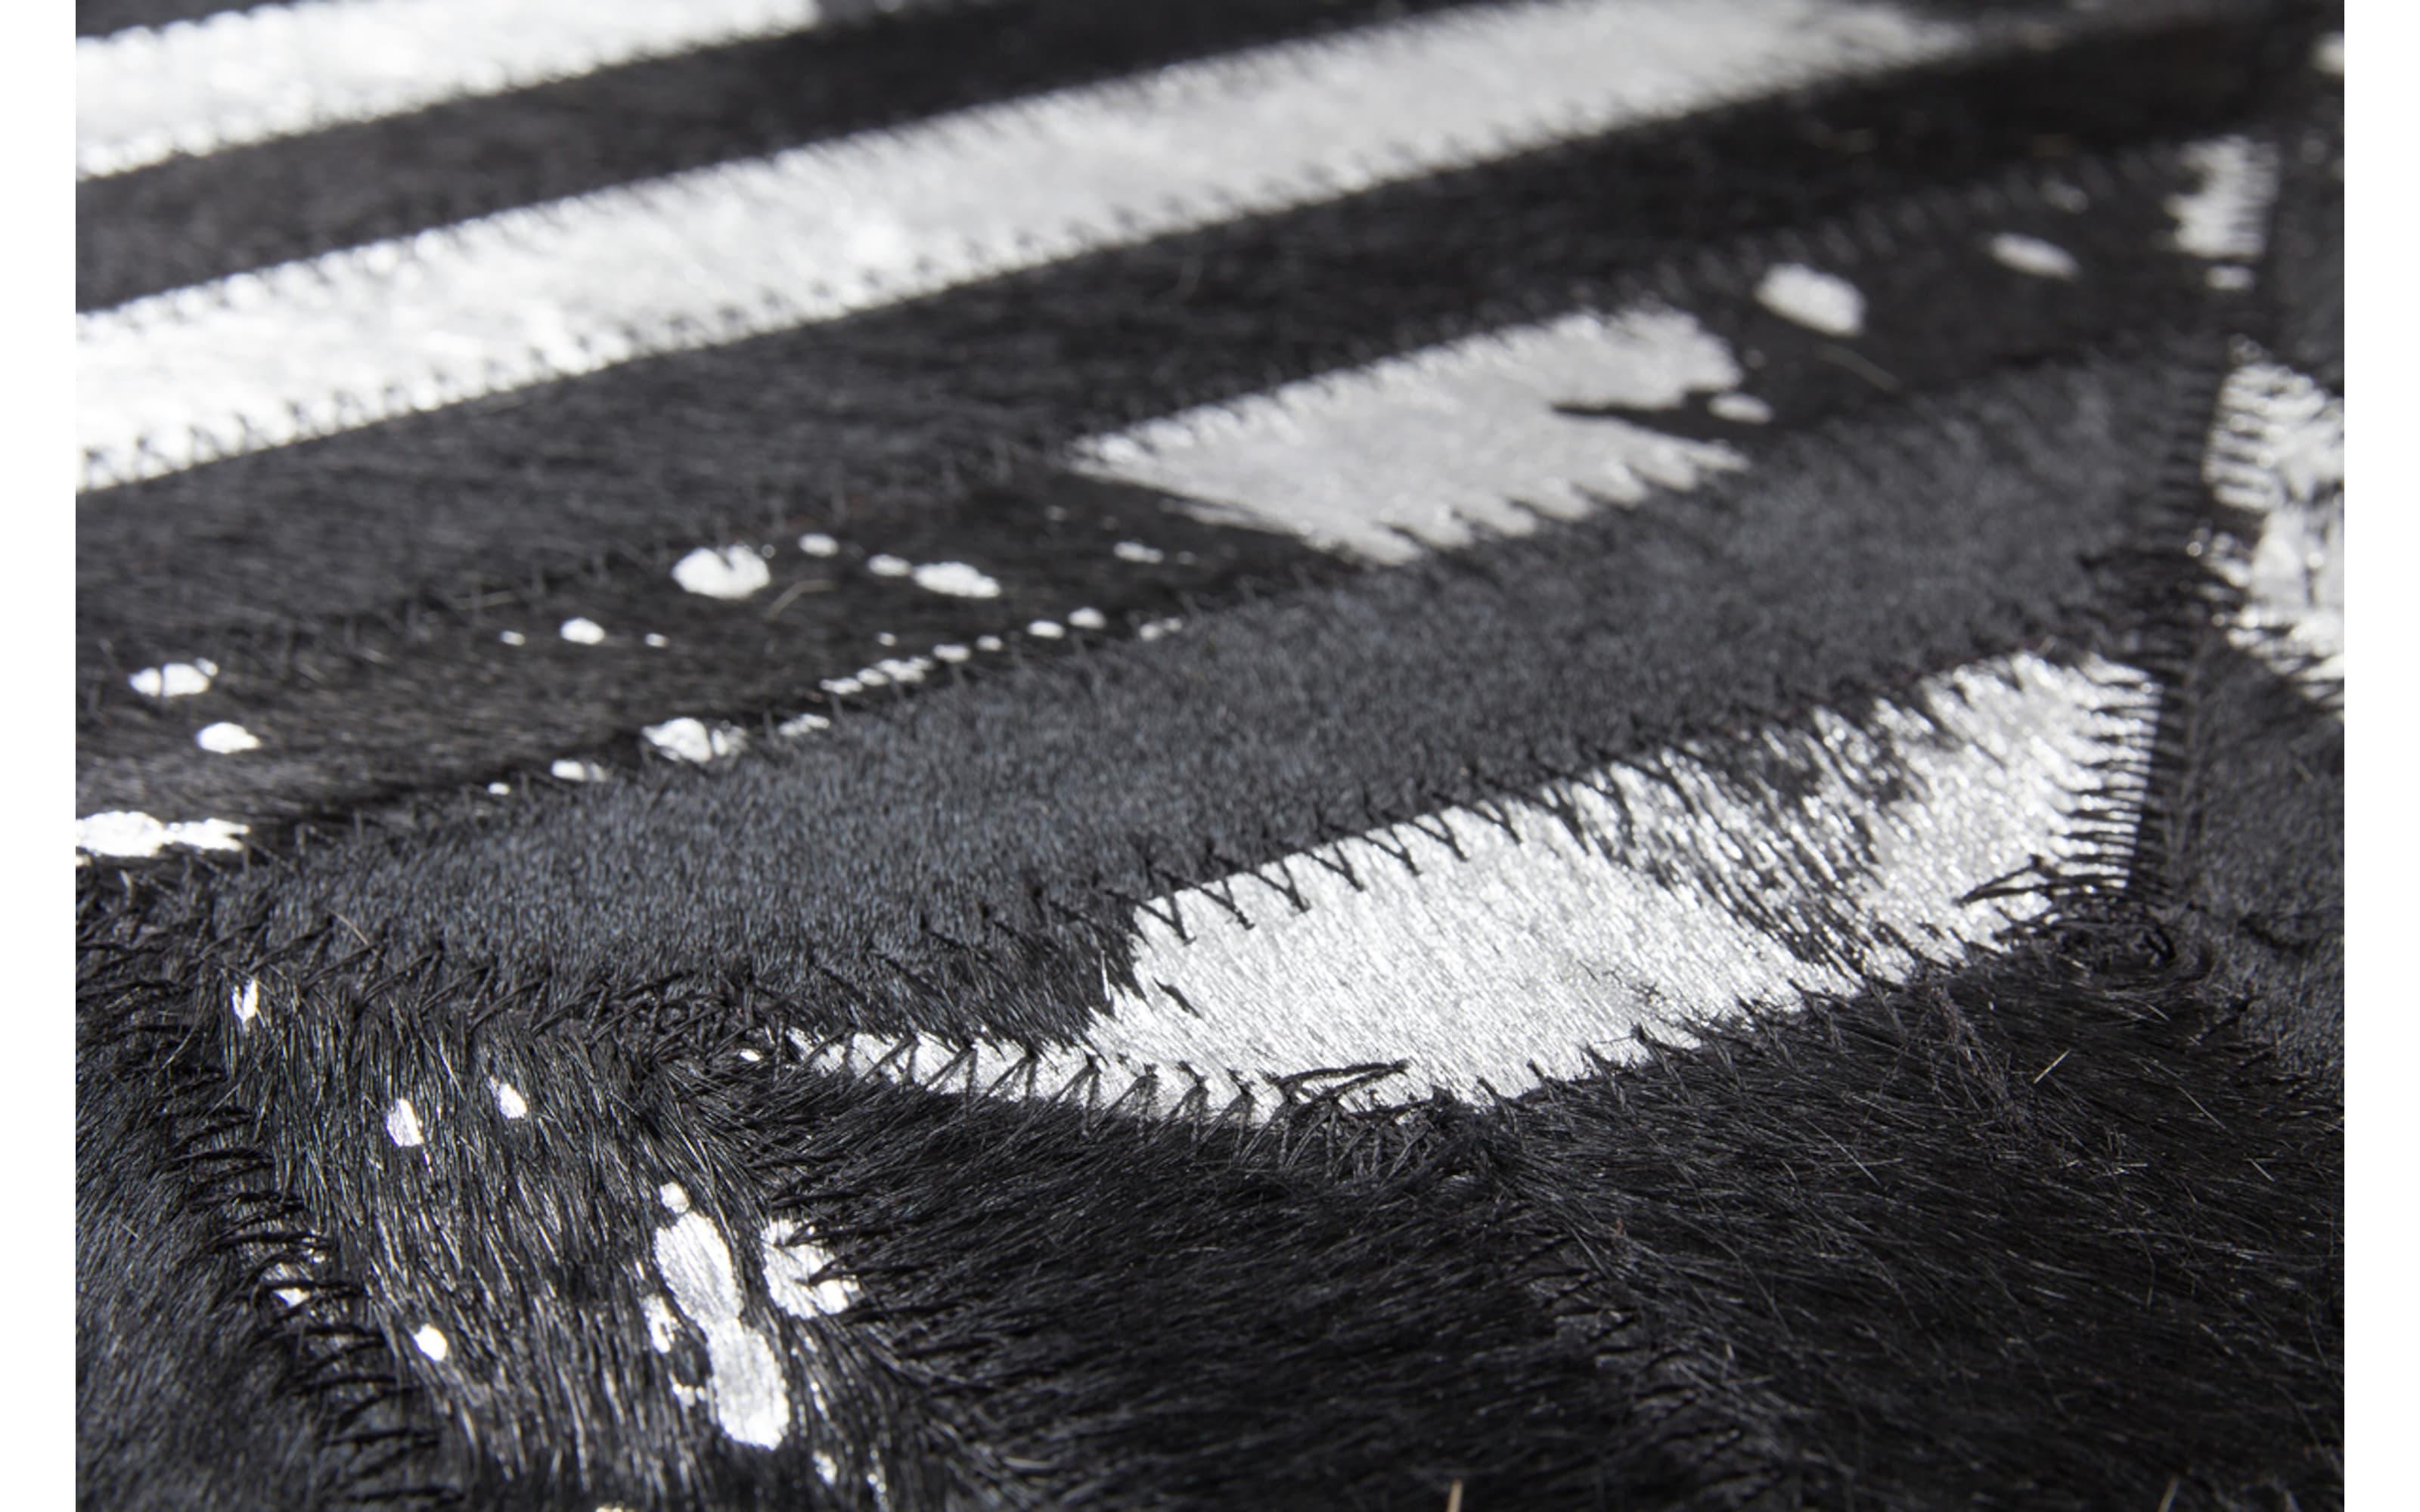 Teppich Spark 410 in schwarz-silber, 80 x 150 cm